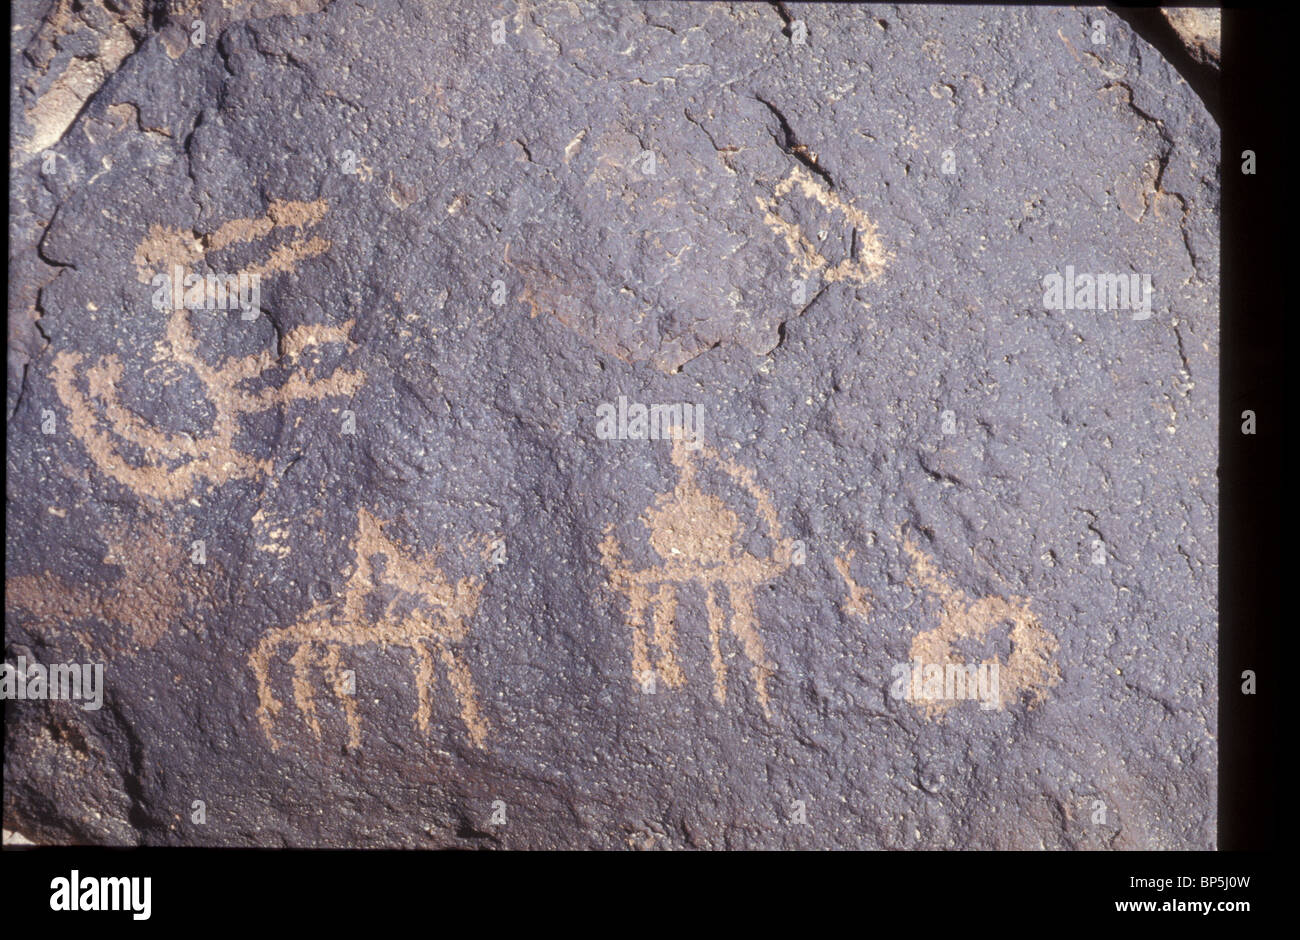 3462. MT. CARCOM, rock dibujos representando escenas de caza y animales locales Foto de stock